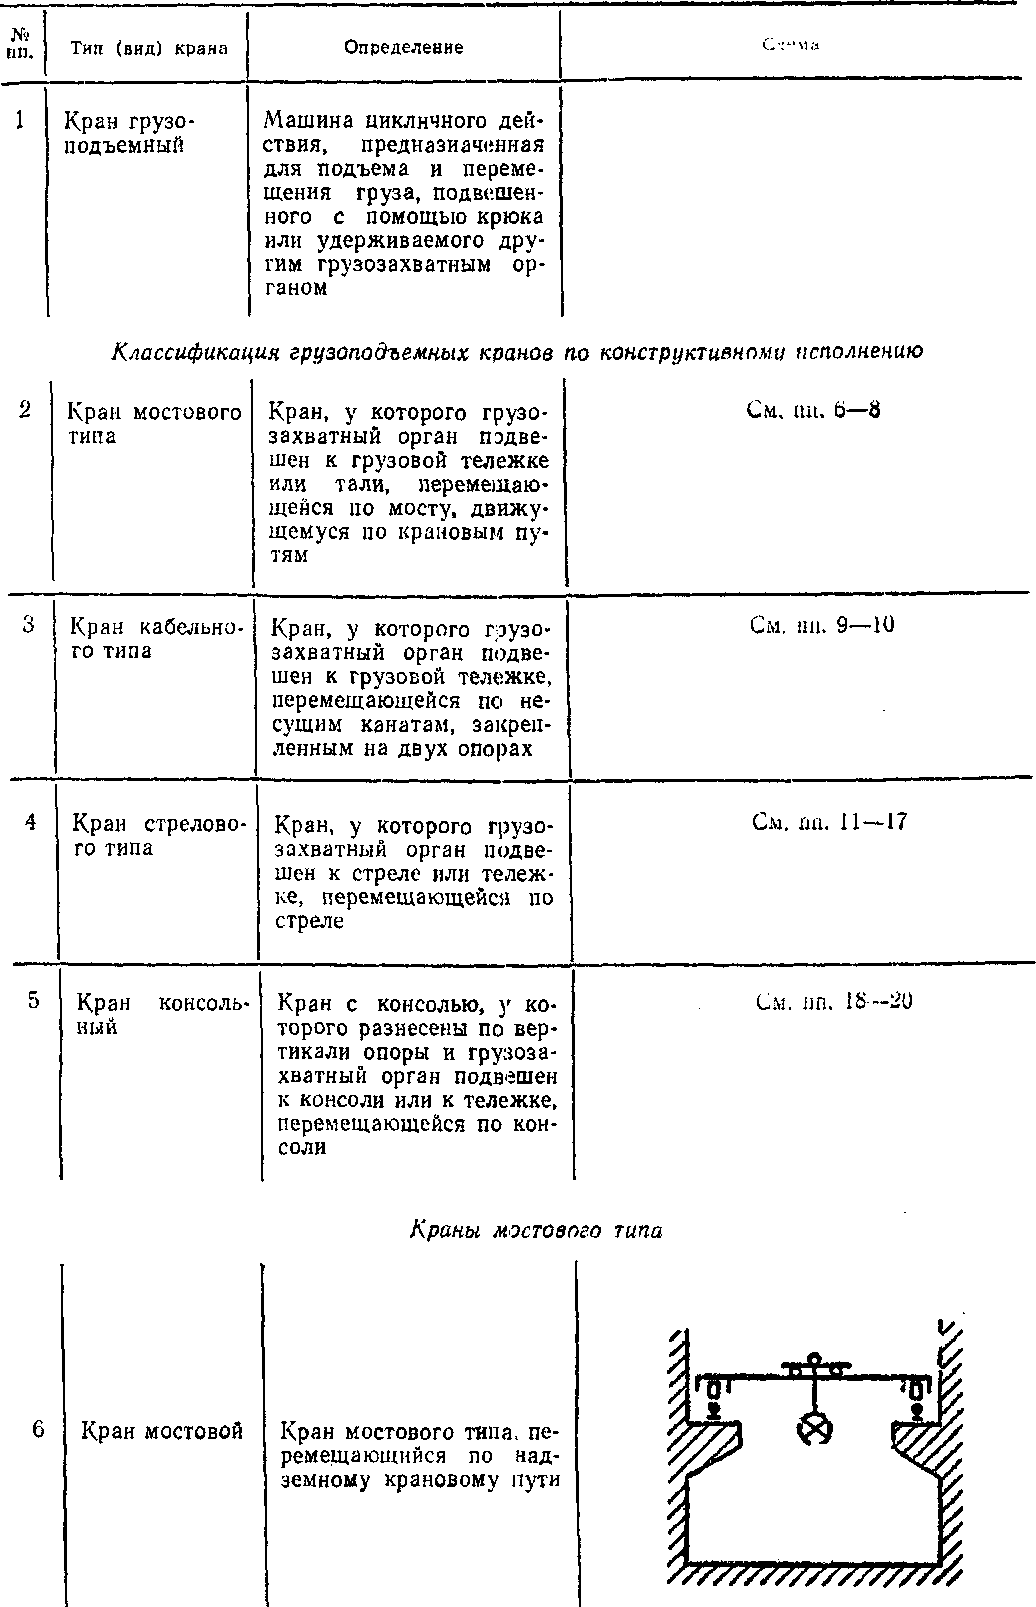 общая классификация кранов